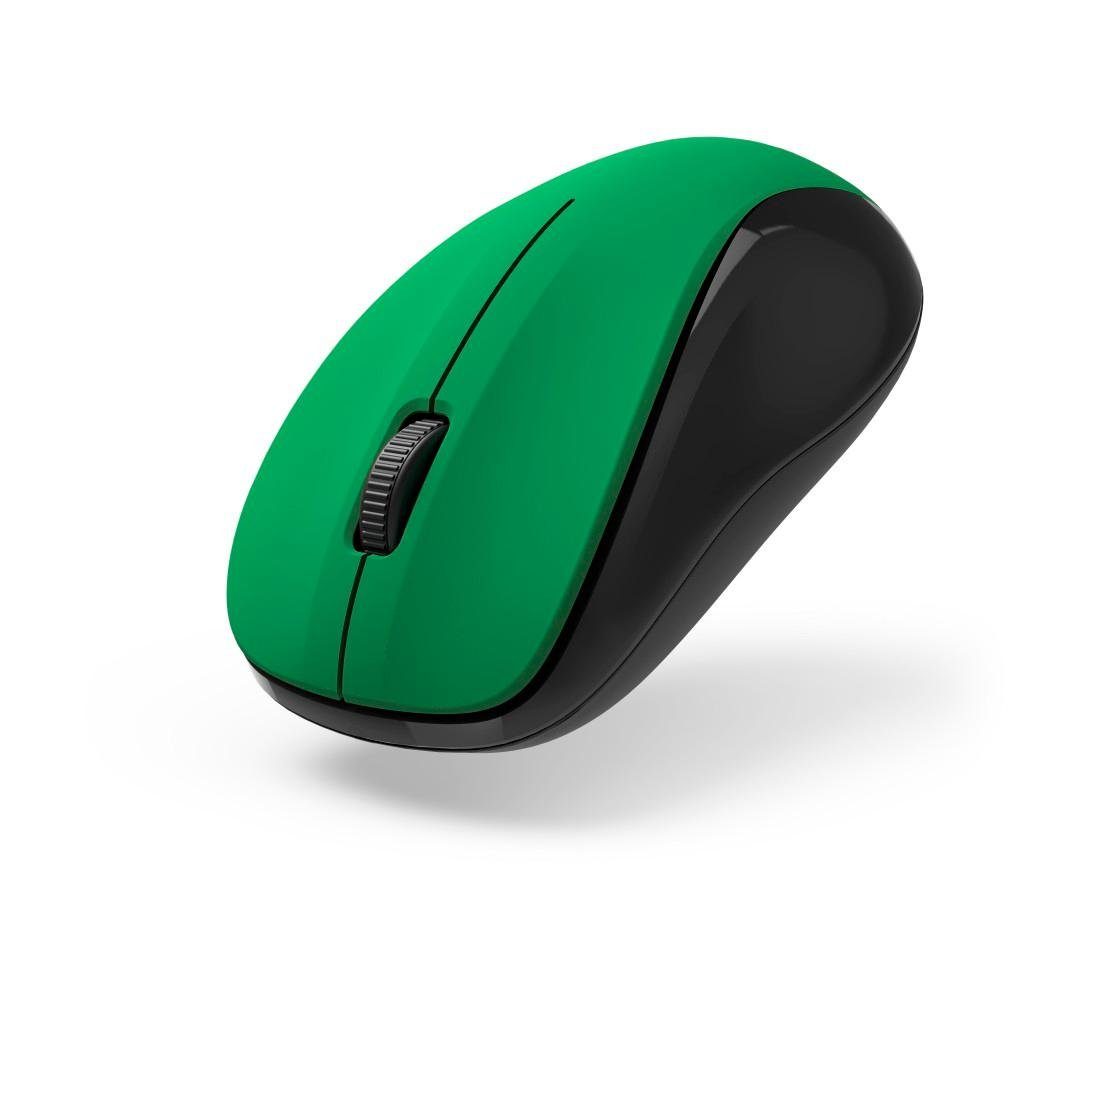 Hama Optische 3 Tasten V2", Maus geräuschlos, "MW-300 USB Funkmaus grün Empfänger